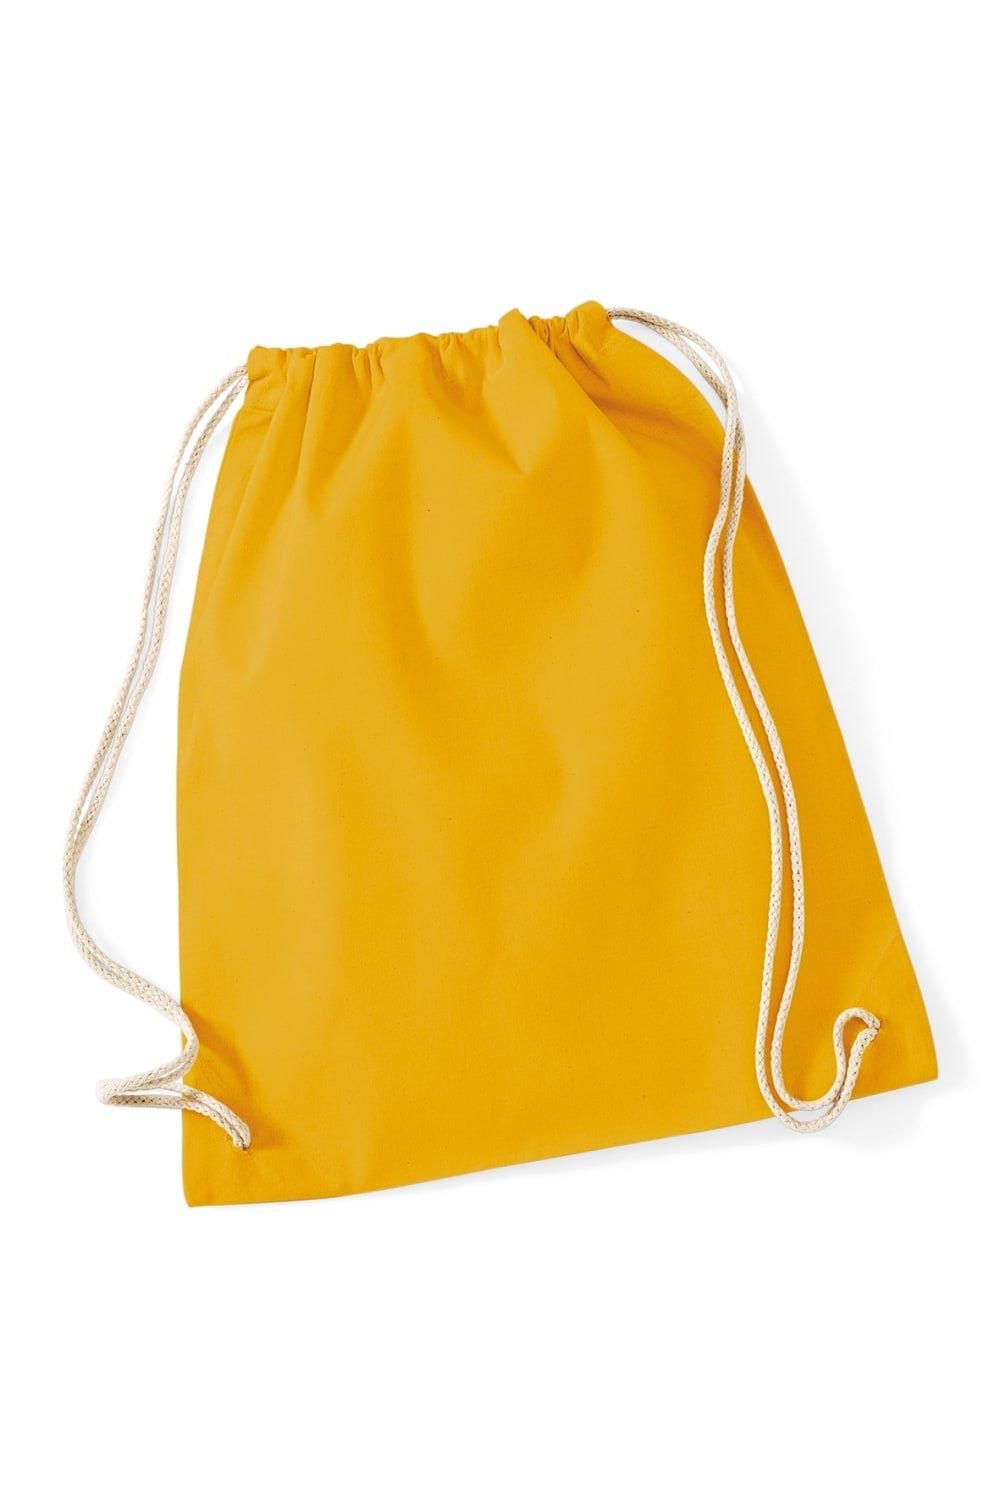 цена Хлопковая сумка Gymsac - 12 литров (2 шт. в упаковке) Westford Mill, желтый